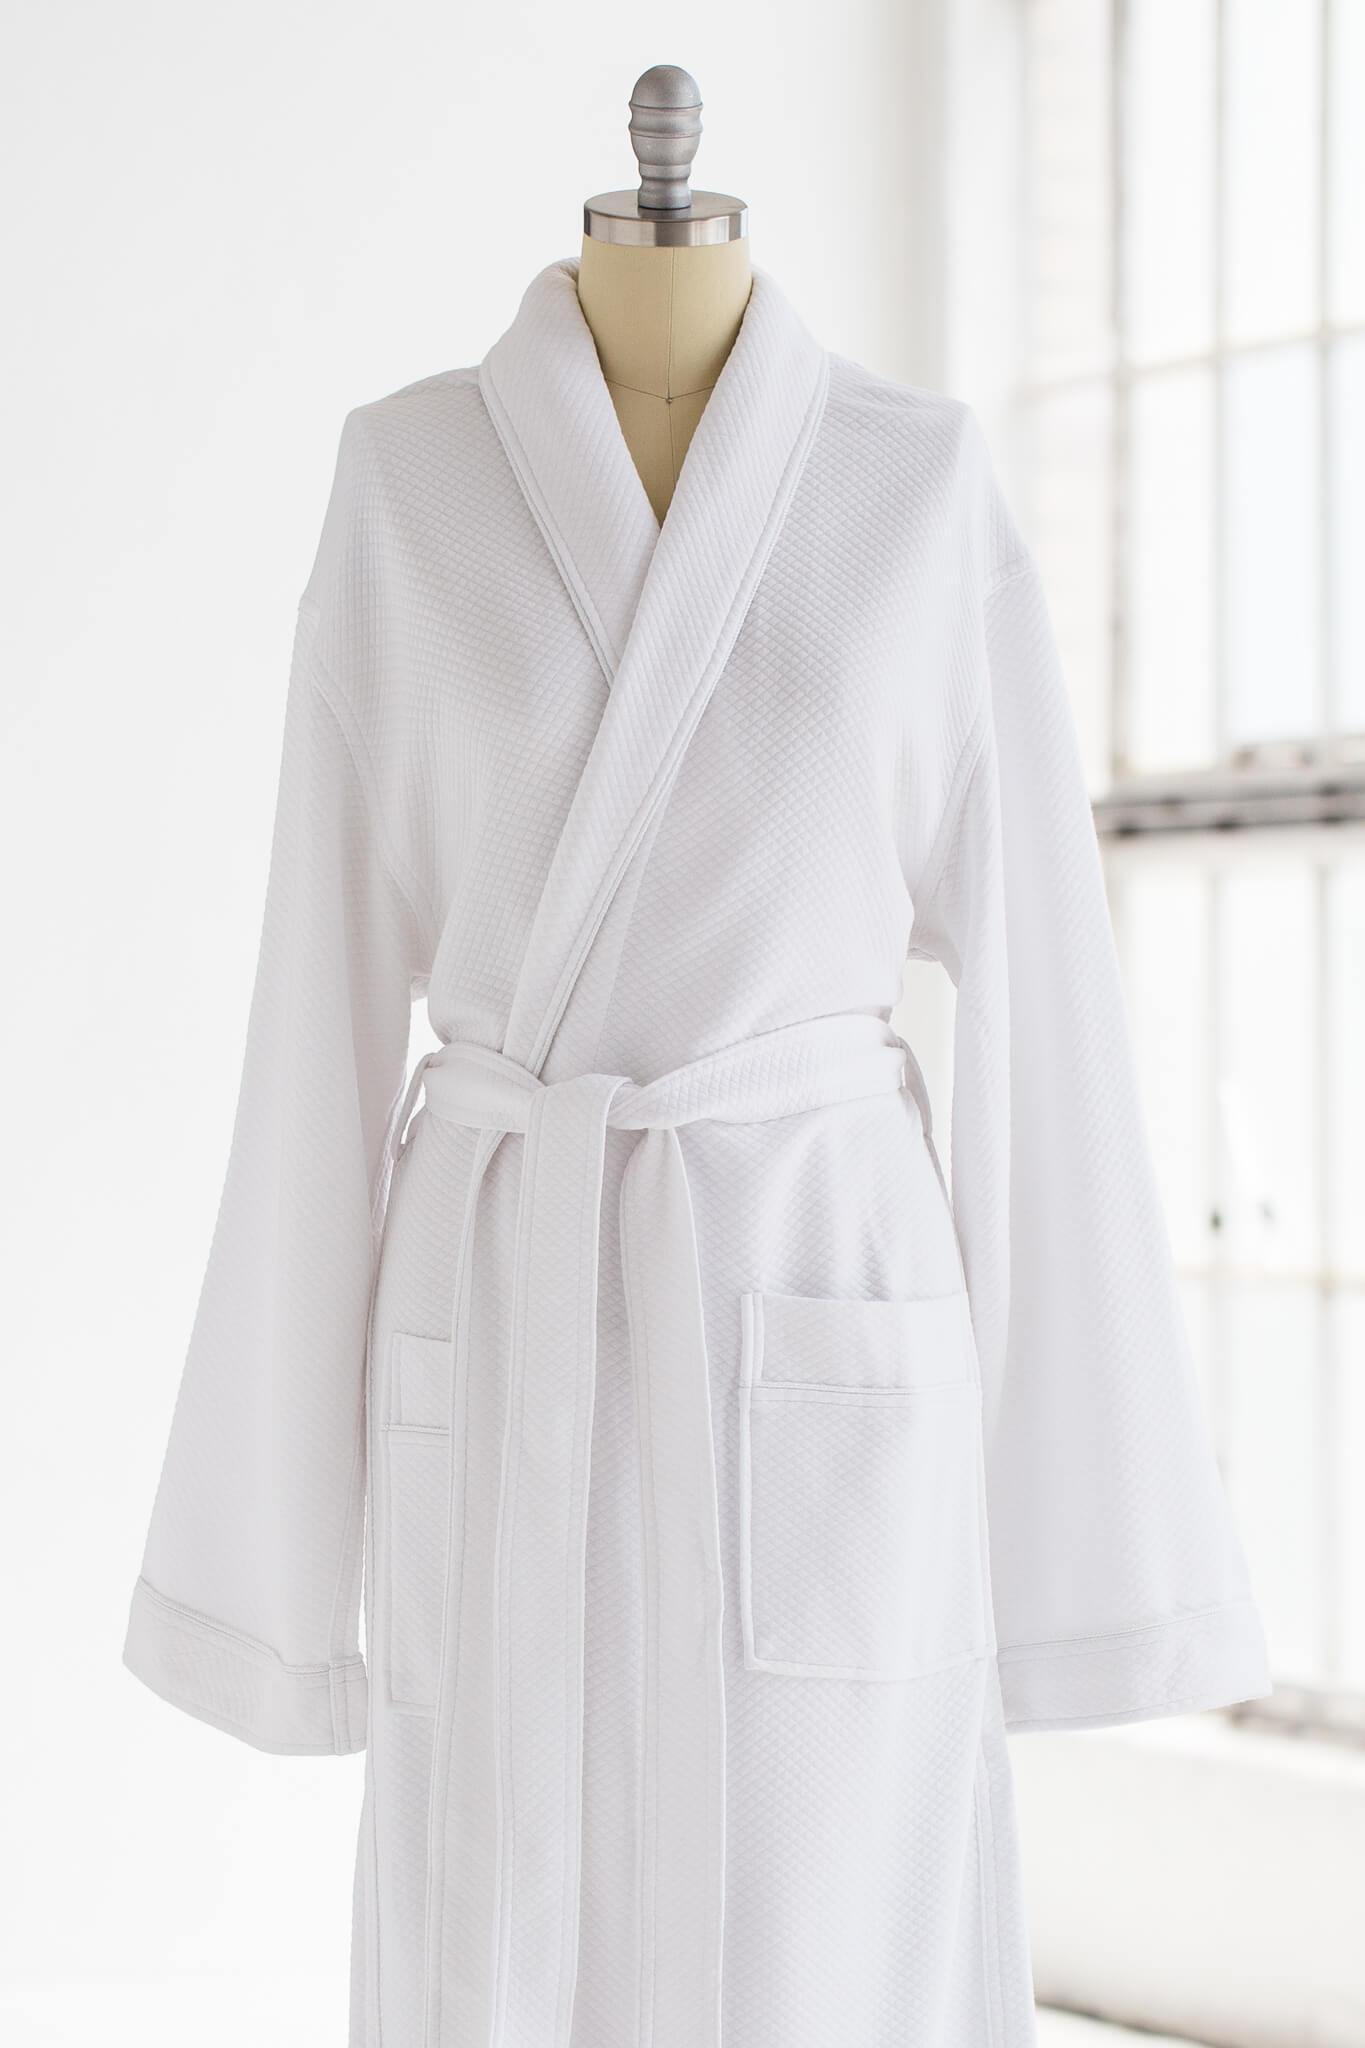 Cotton & Modal Luxury Spa Robe, Luxury Spa Robes